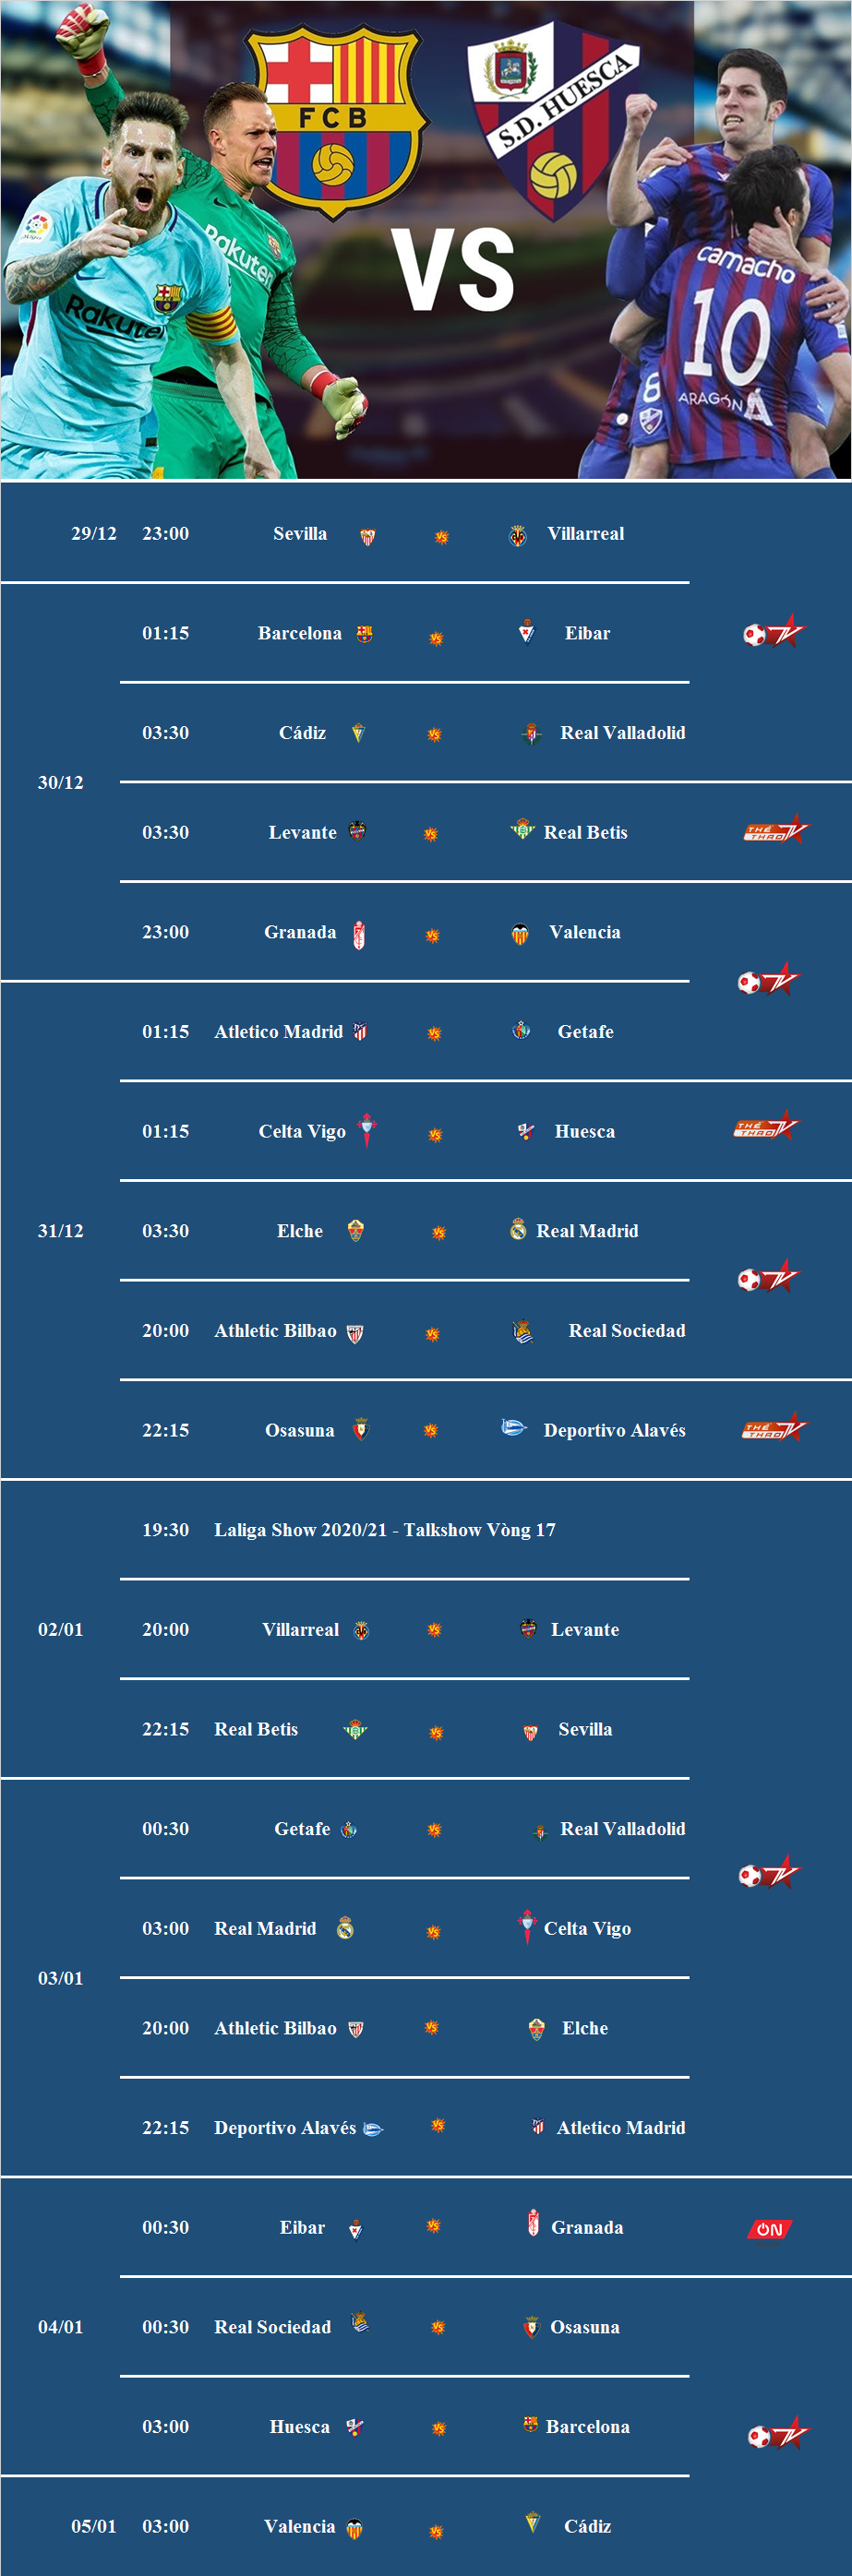 Đón xem vòng 16 và 17 La Liga 2020/21 trên VTVcab